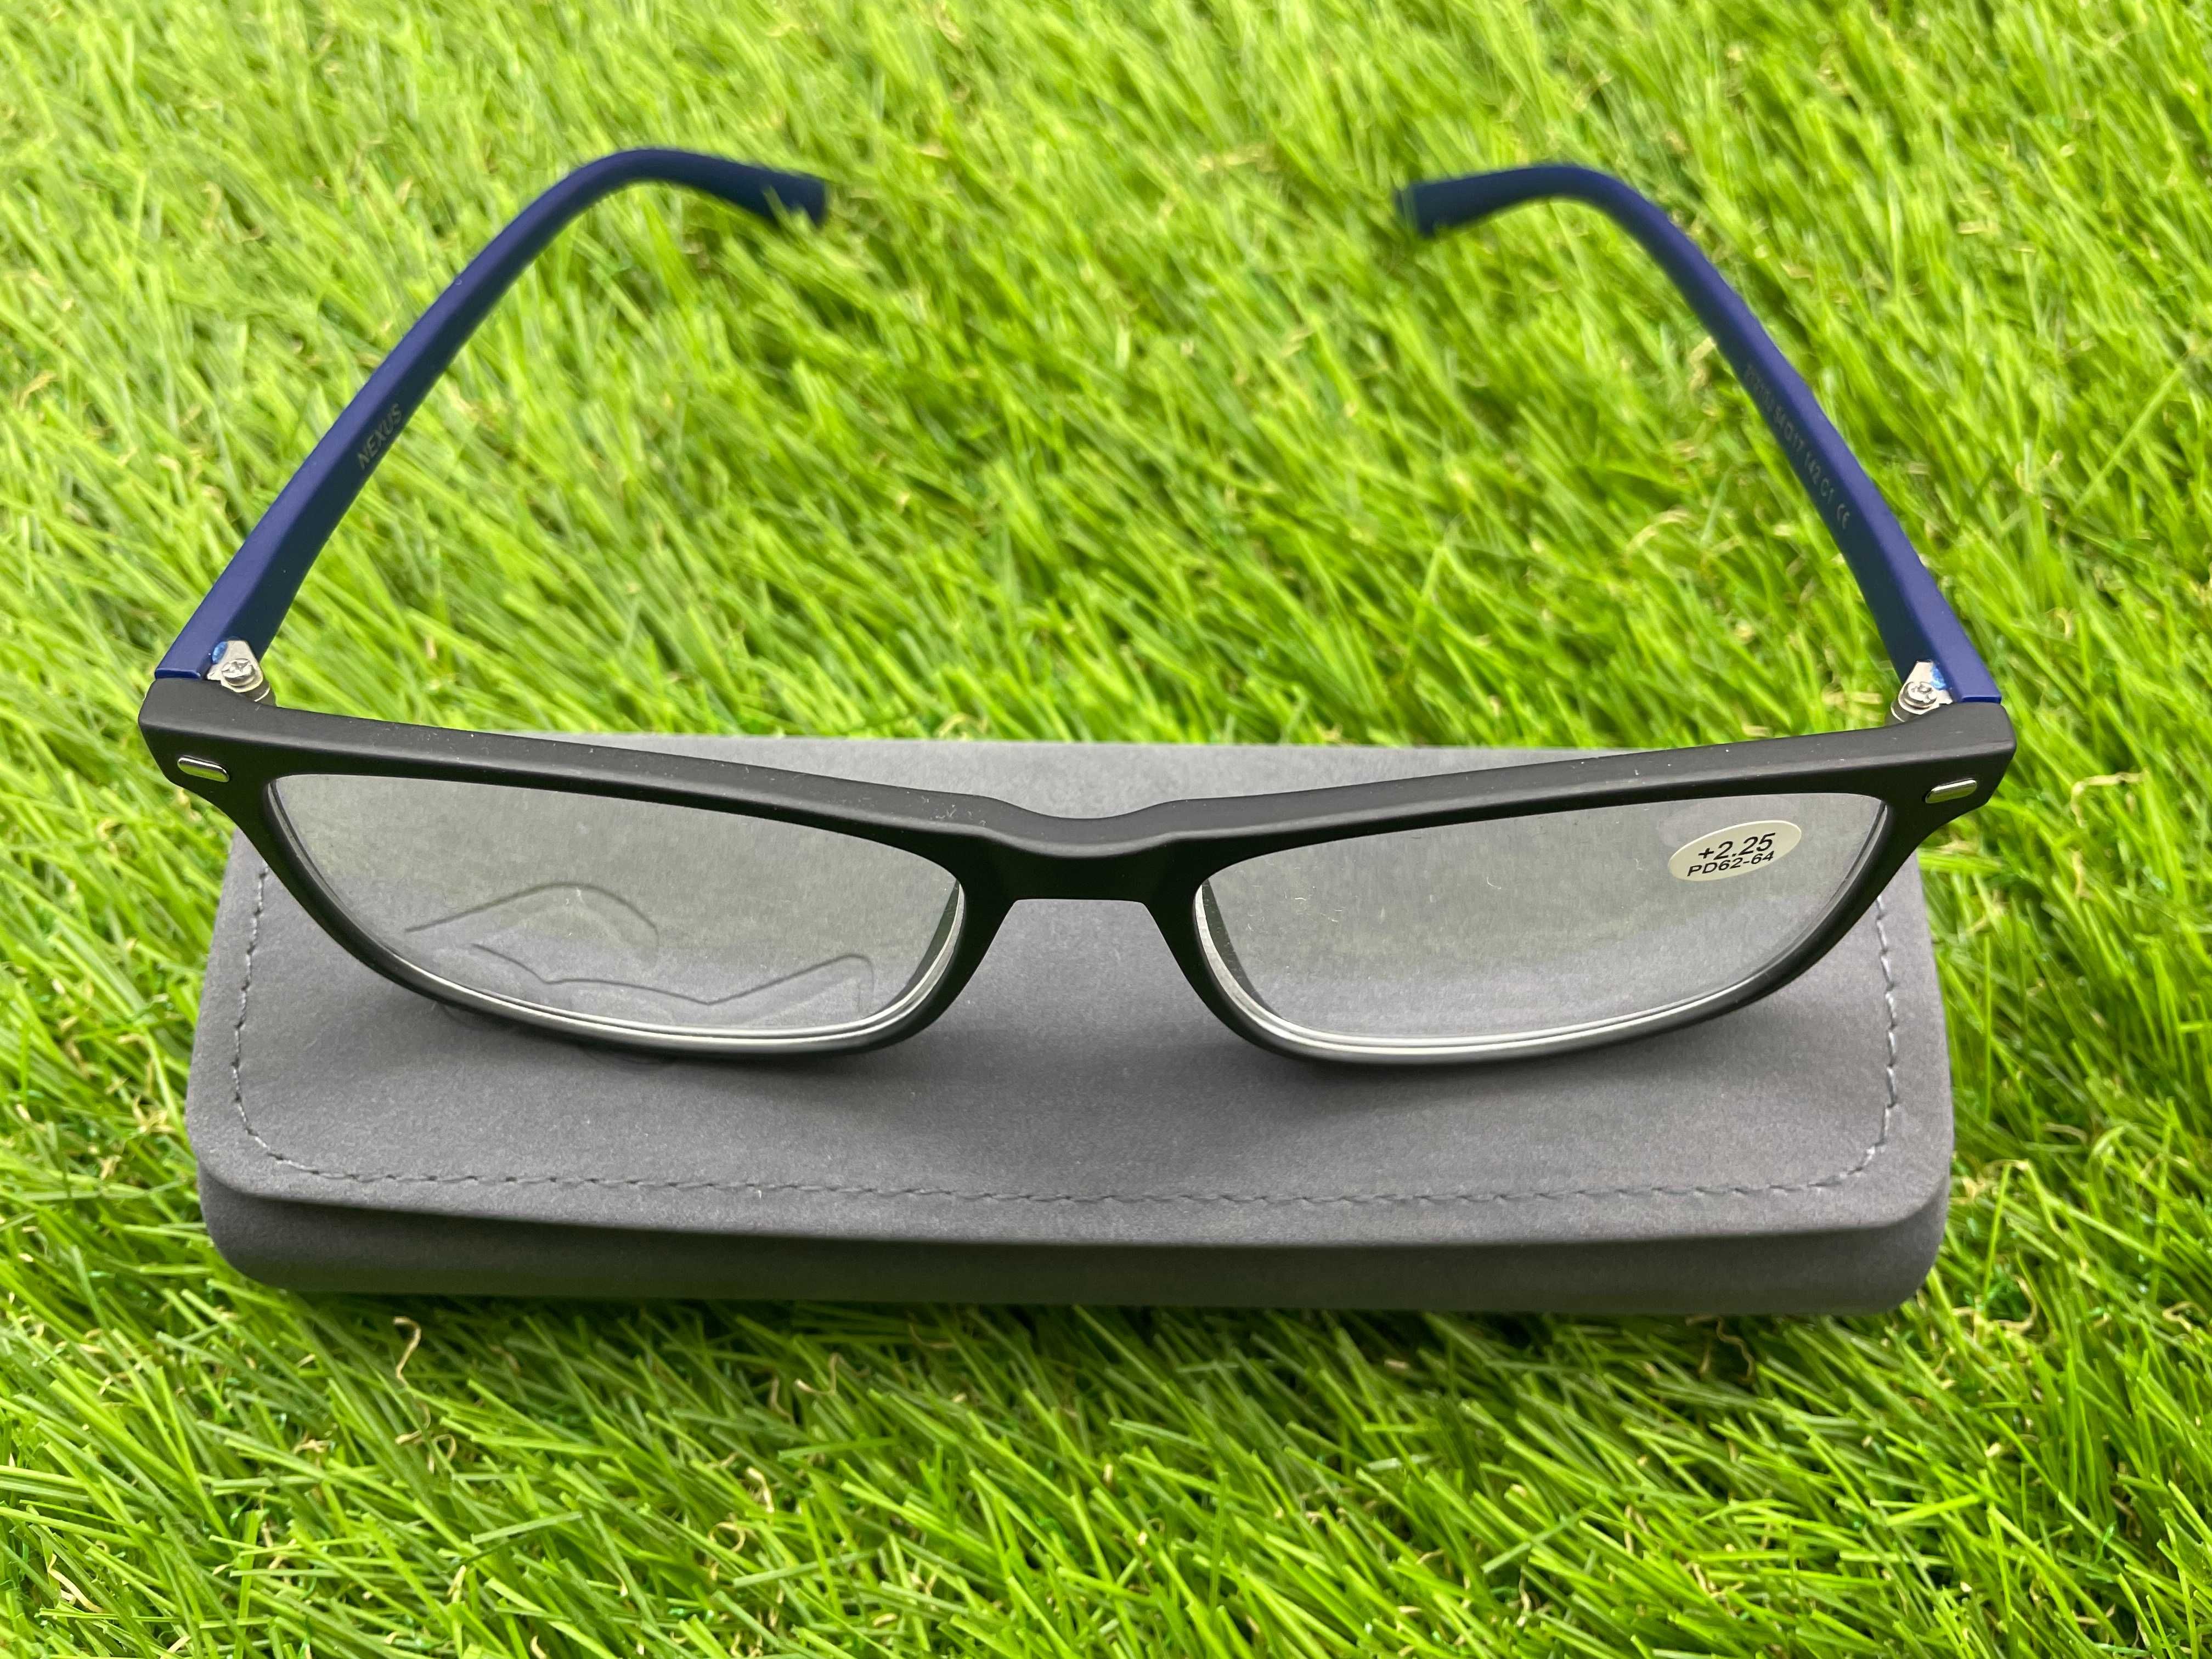 Мужские очки/Очки для зрения/Готовые очки с диоптриями